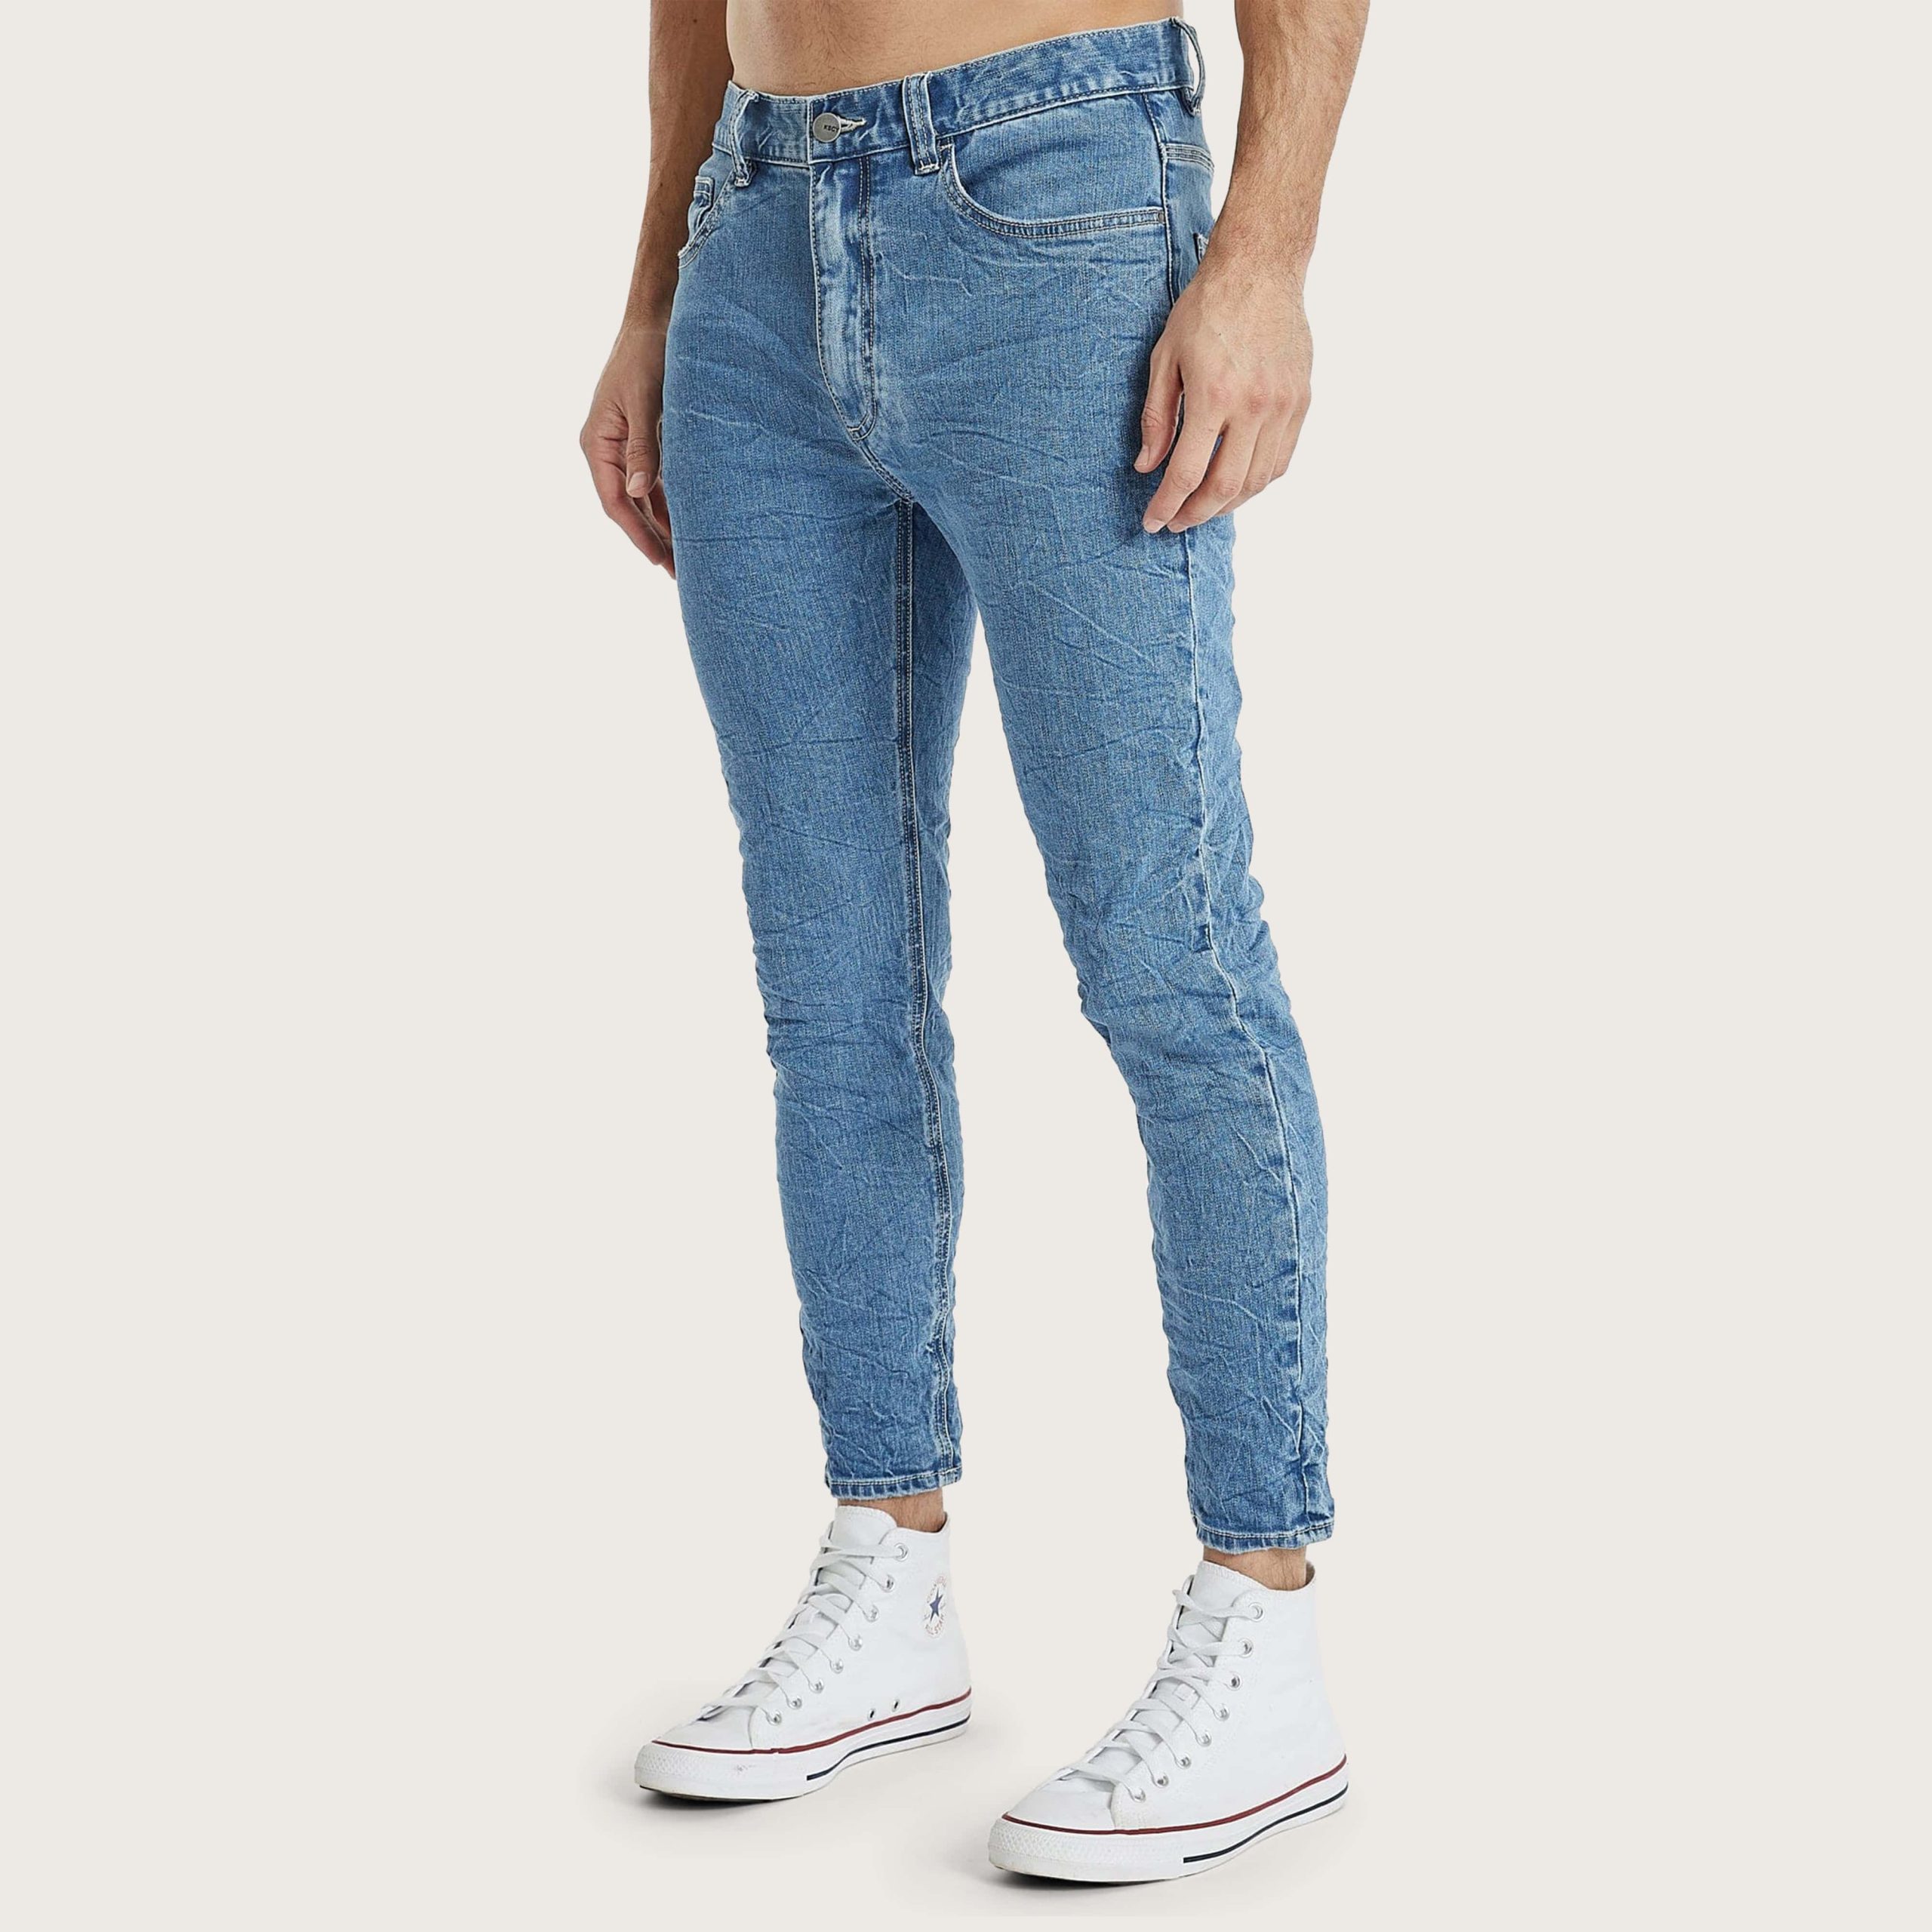 silverlake jeans